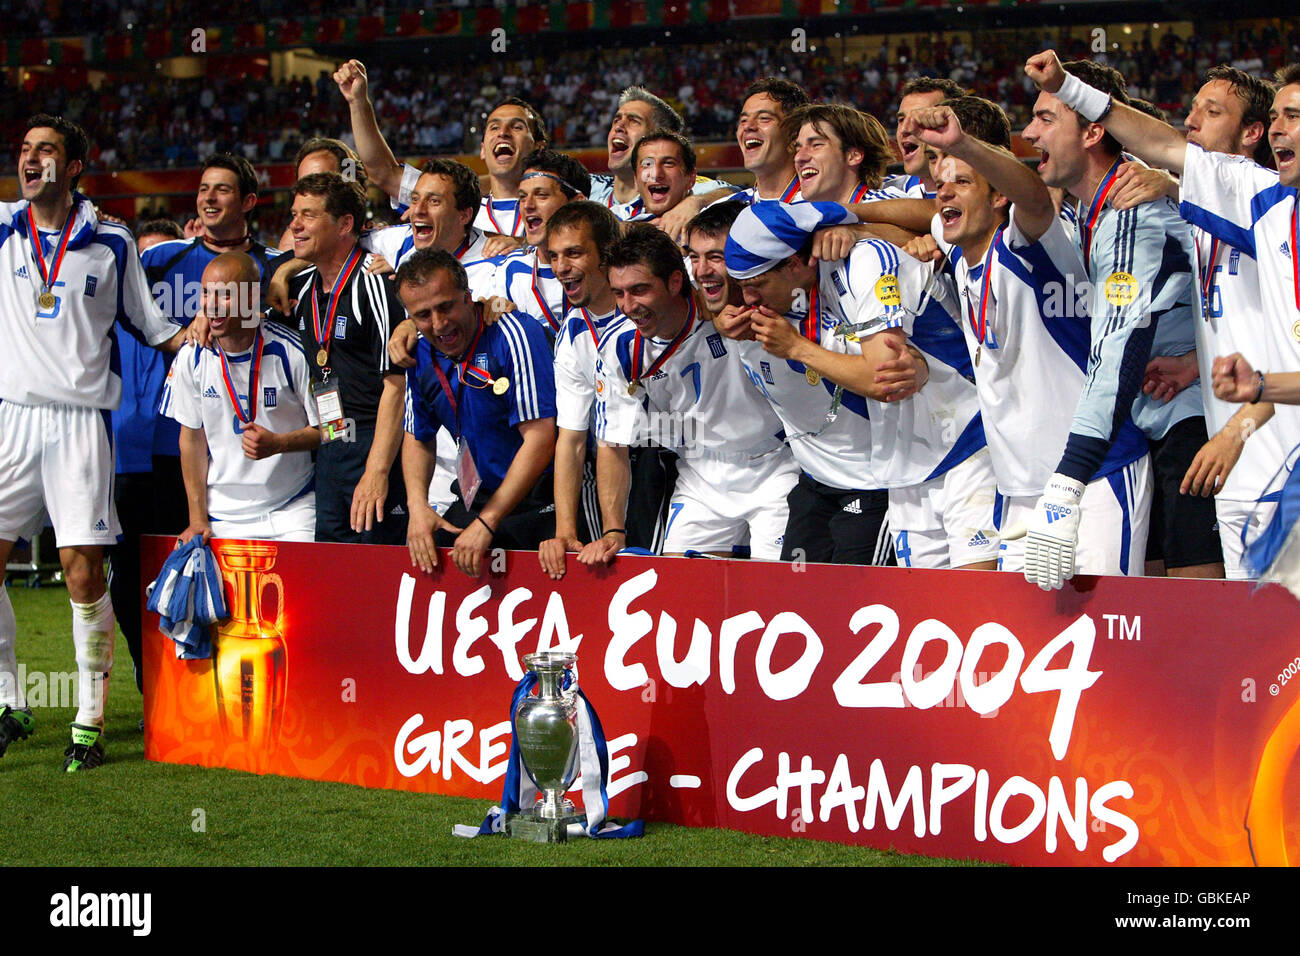 Greece euro 2004